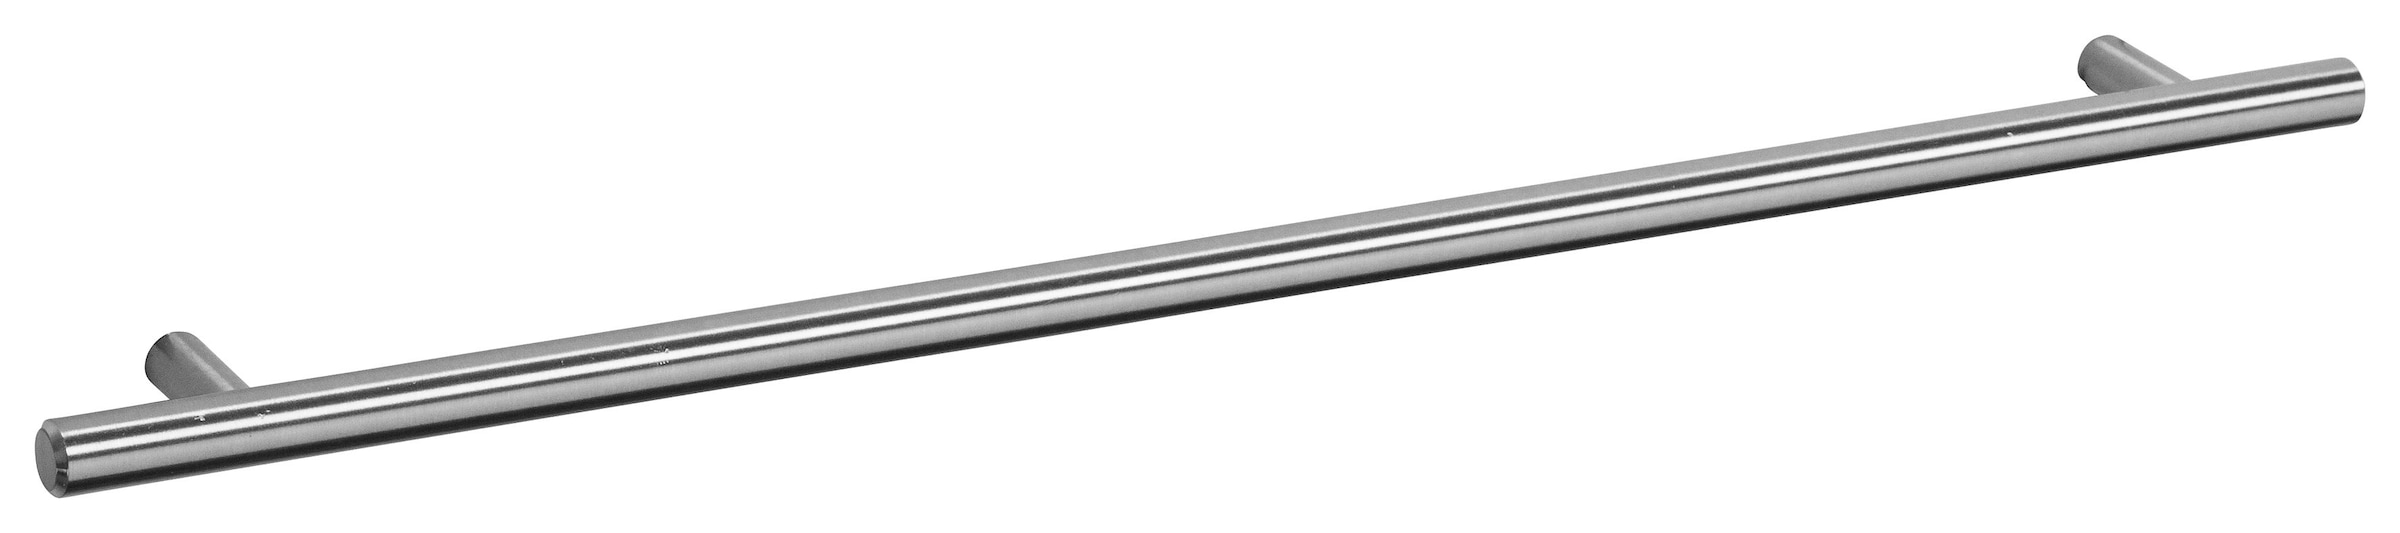 OPTIFIT Spülenschrank »Bern«, 100 cm breit, mit 2 Türen, höhenverstellbare  Füße, mit Metallgriffen bestellen online bei OTTO